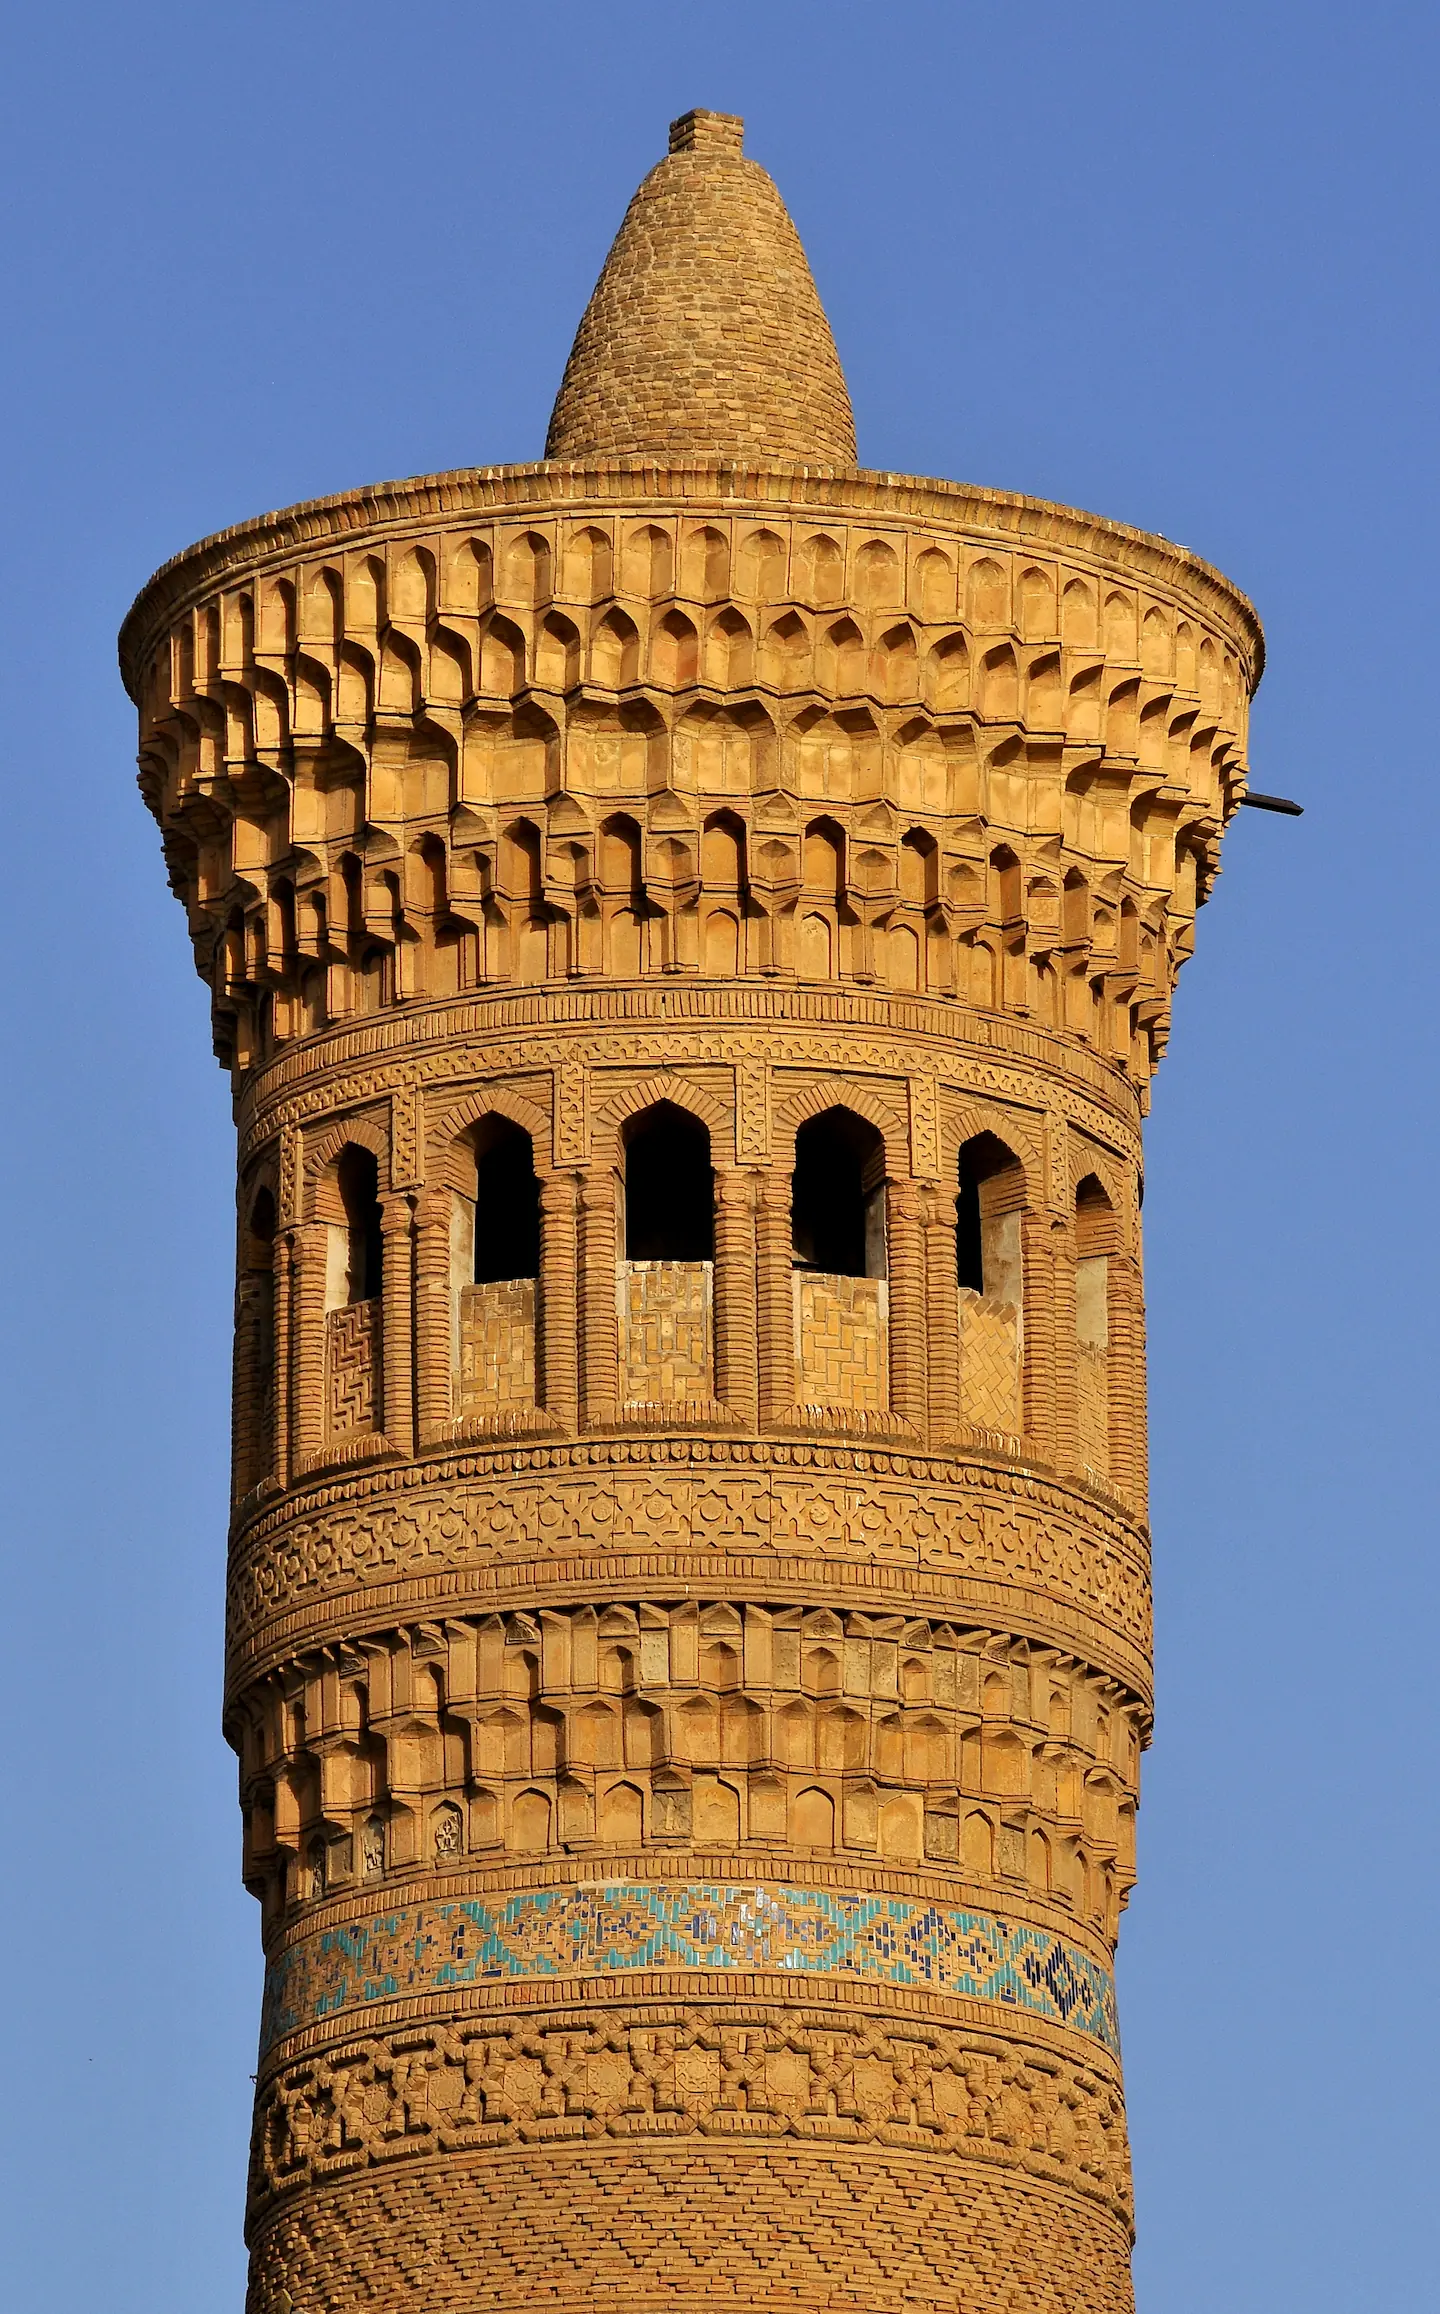 Un détail de la lanterne du minaret par beau temps, le bandeau de briques glaçurées bleues et turquoises brille au soleil.